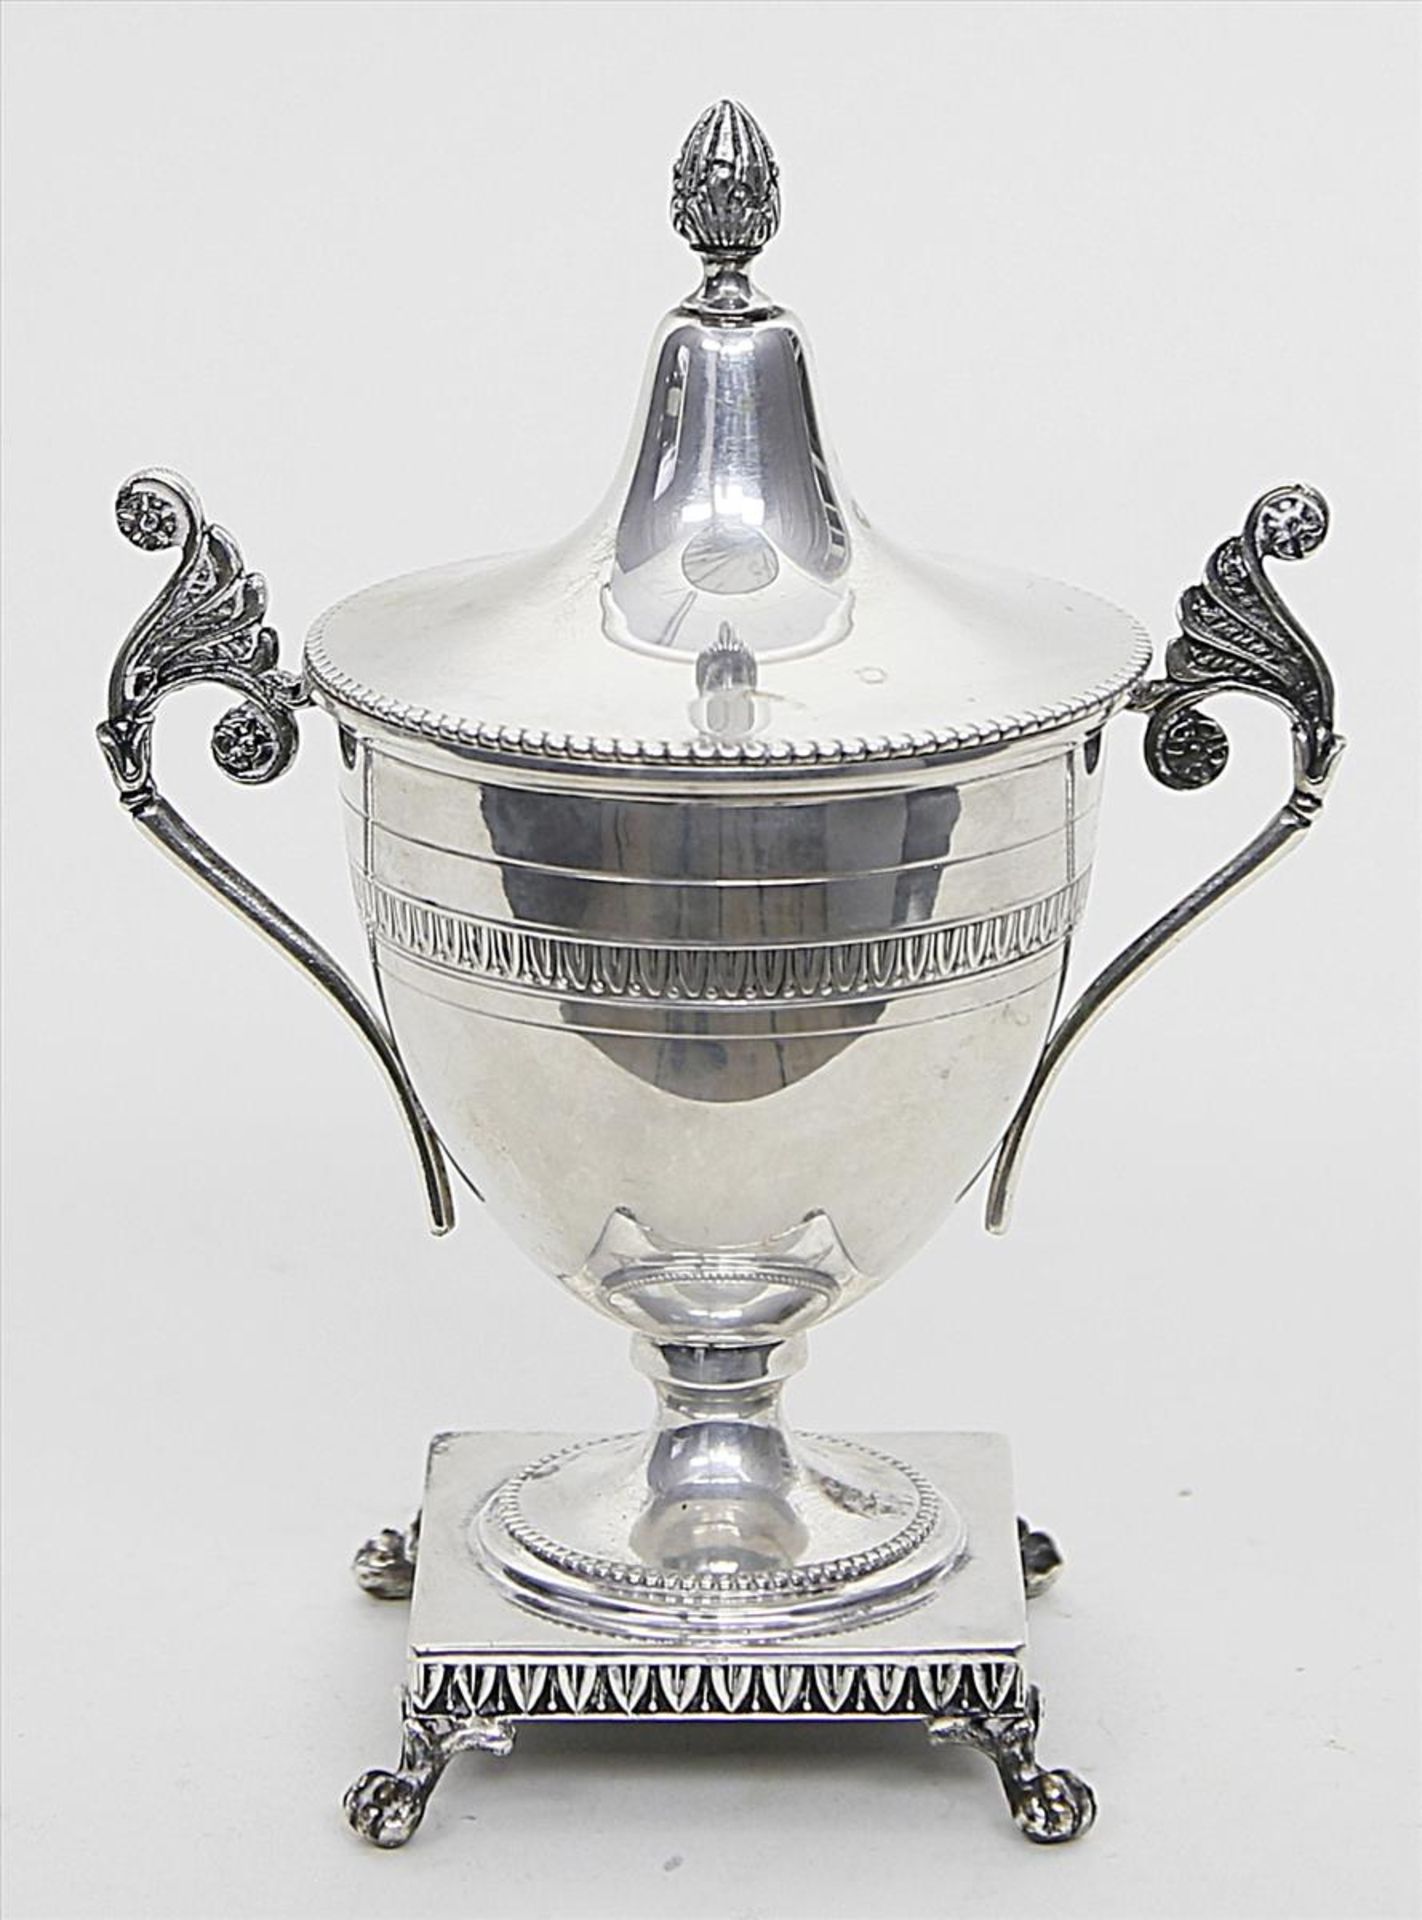 Zuckerdose im Empirestil.830/000 Silber, 231 g. Auf vierpassigem Sockel mit Tatzenfüßen